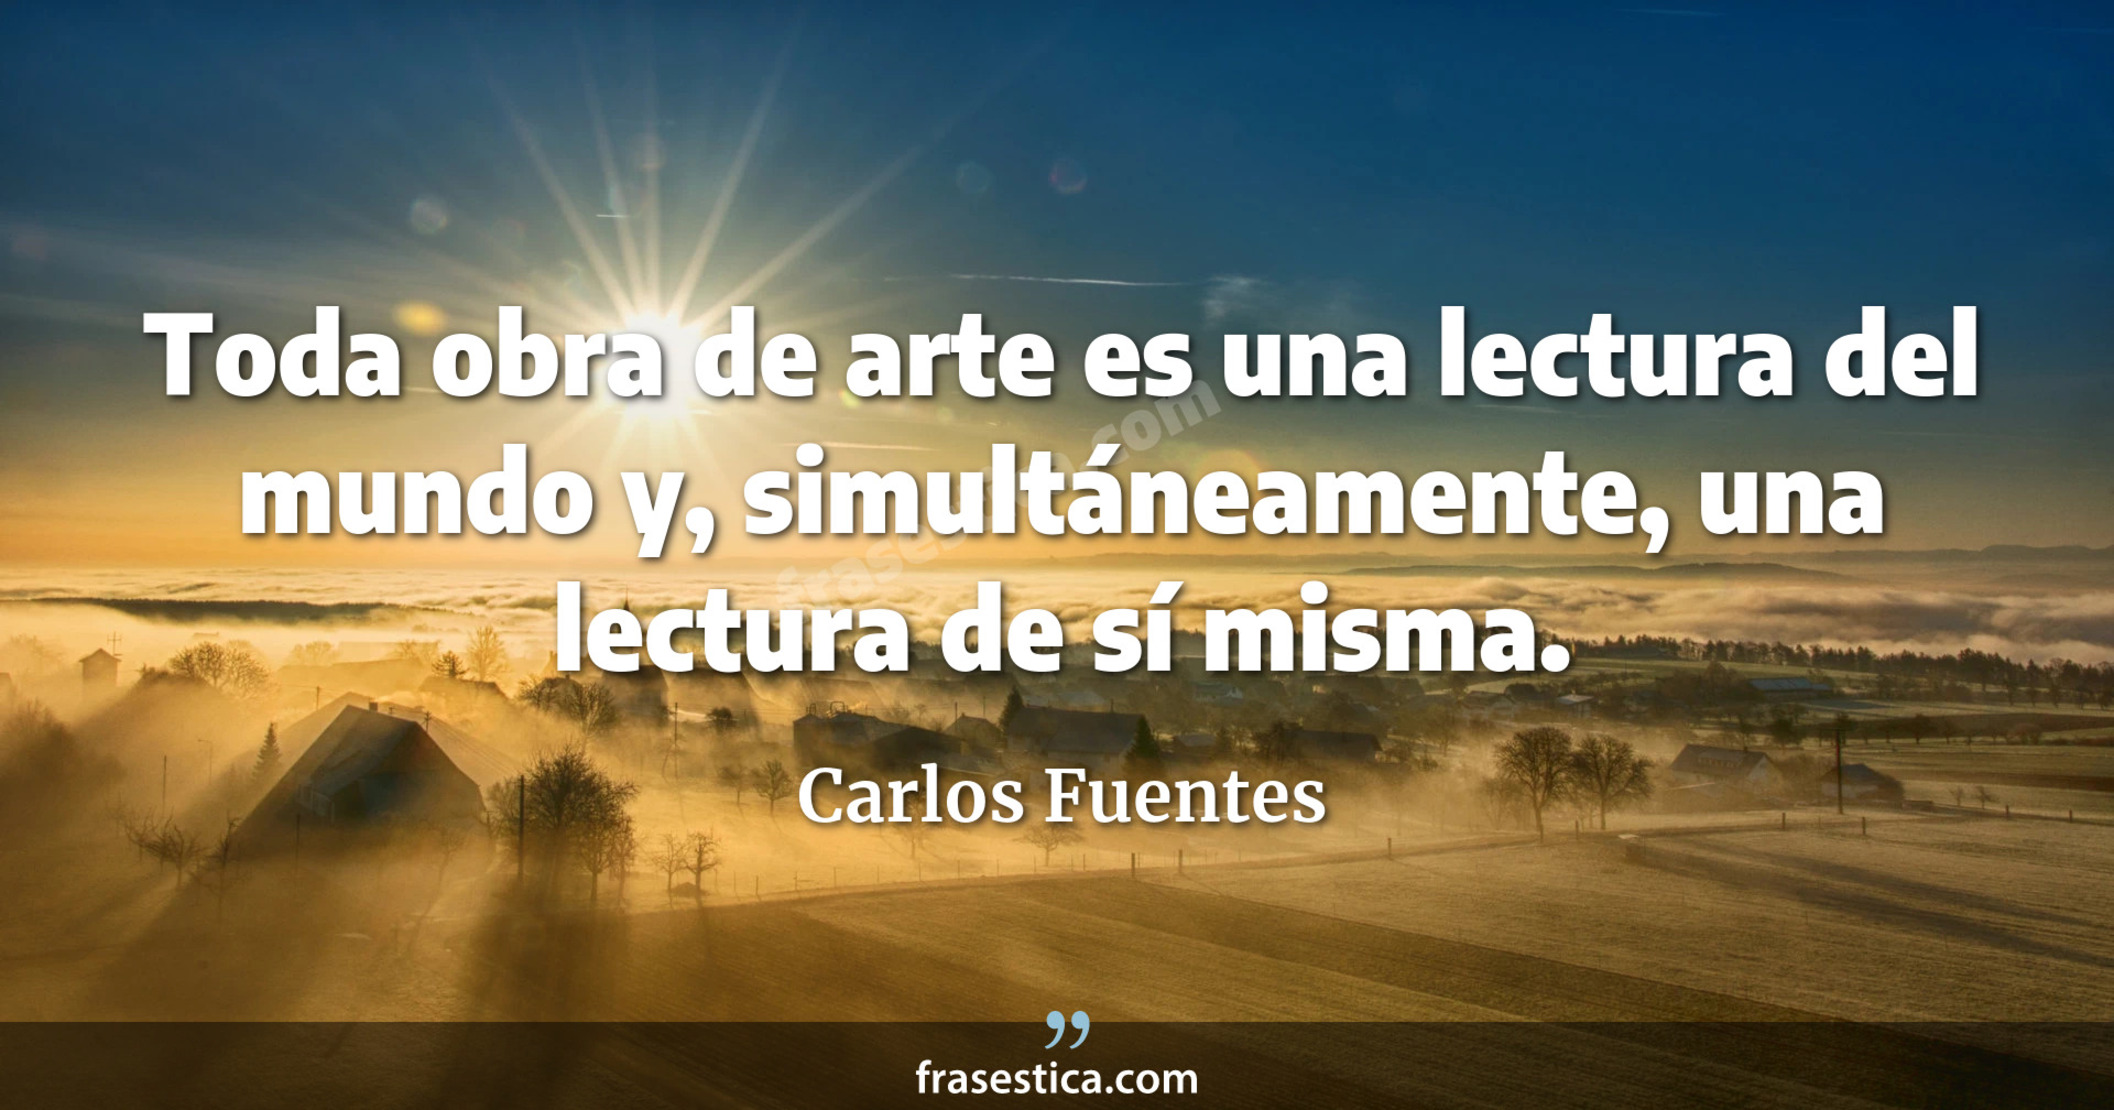 Toda obra de arte es una lectura del mundo y, simultáneamente, una lectura de sí misma. - Carlos Fuentes